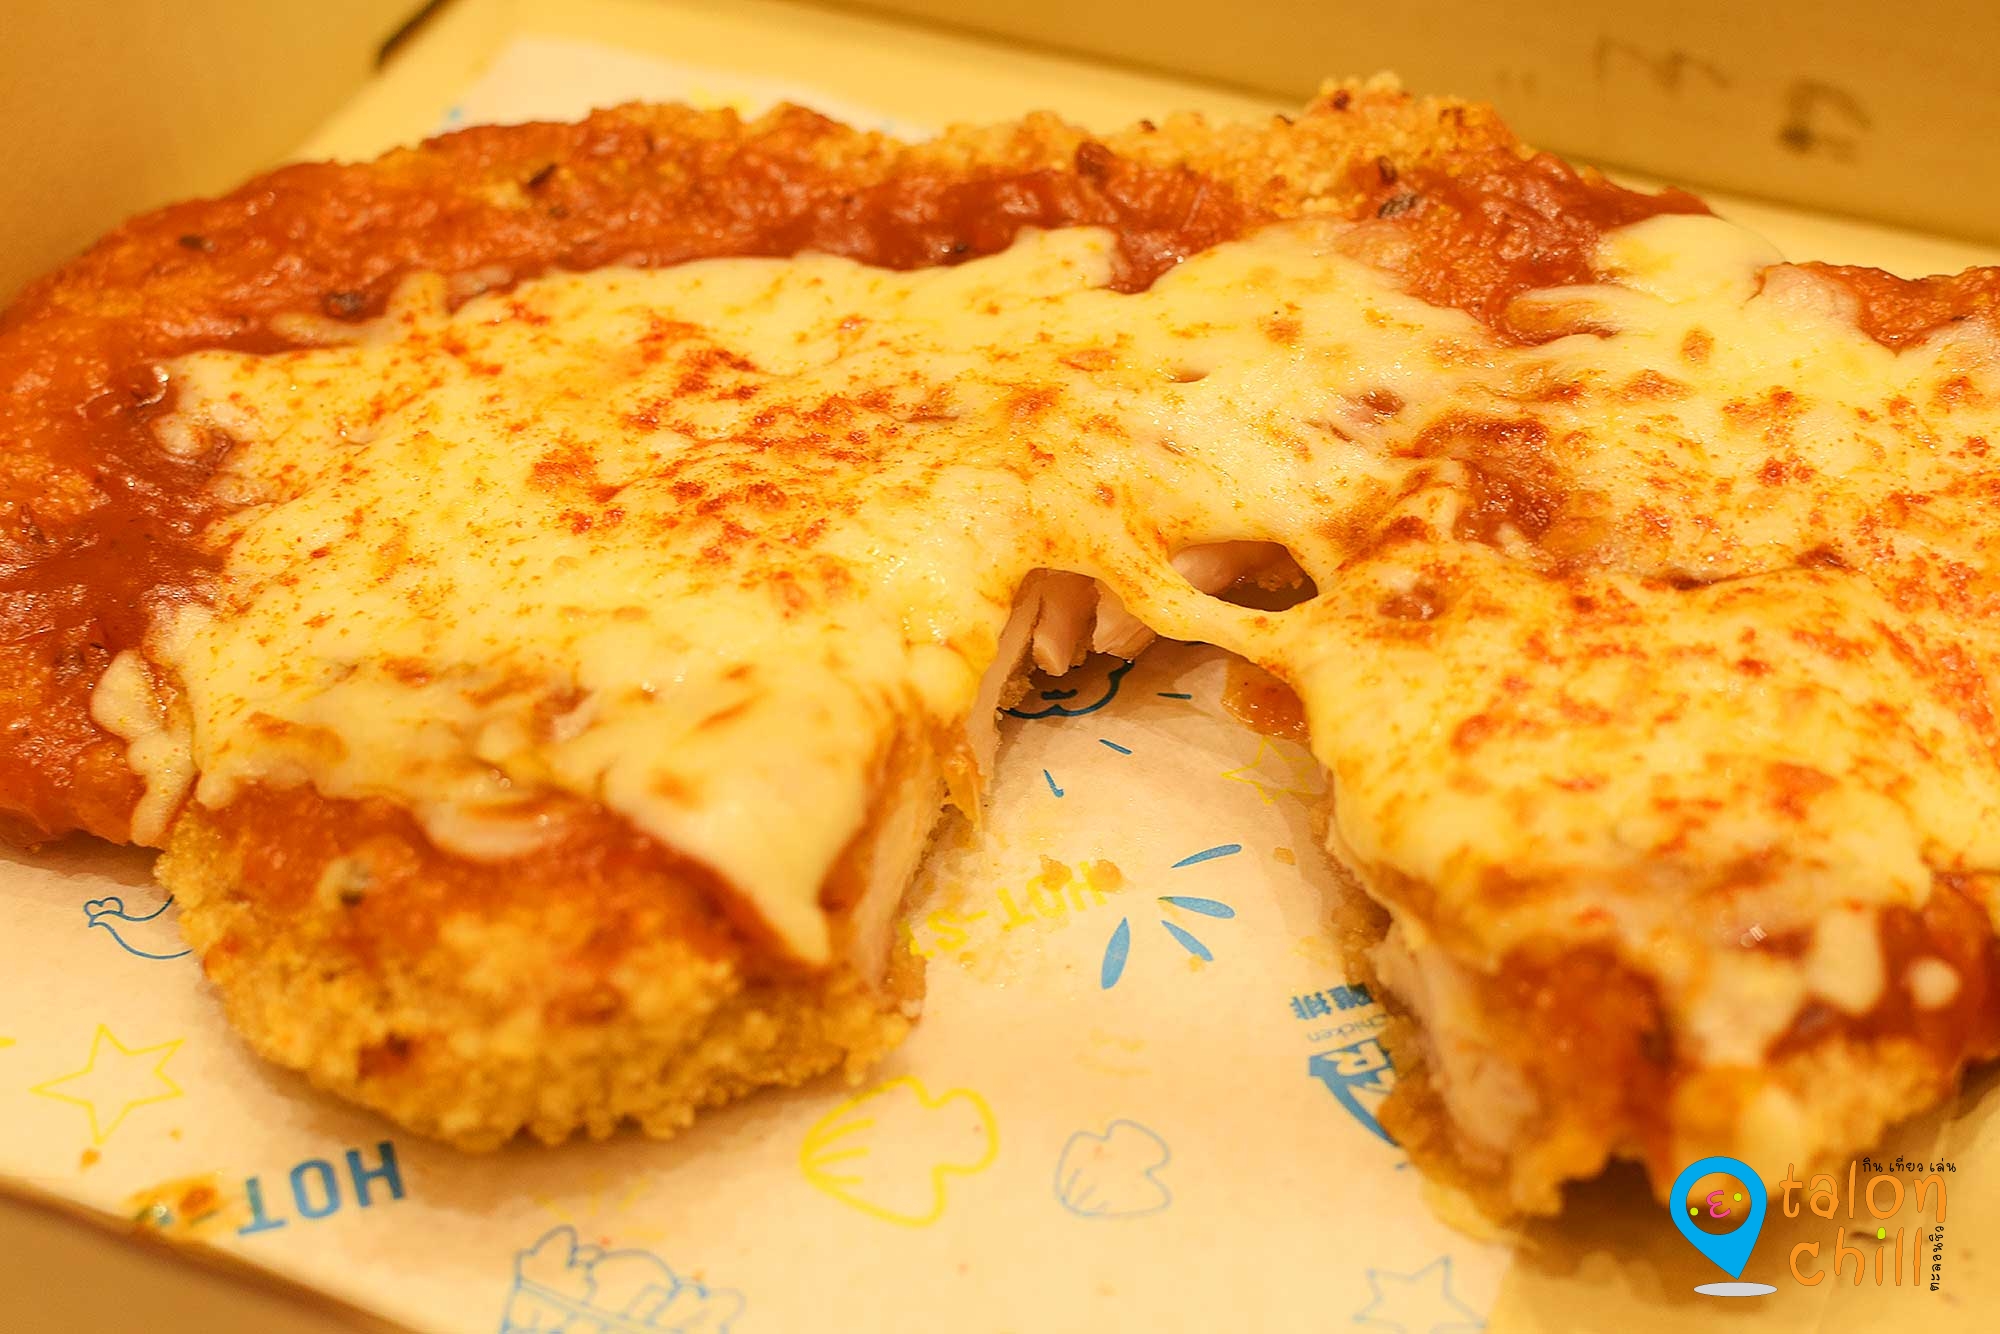 [ตะลอนกิน] HOT-STAR CHICKEN PIZZA ฮ็อตสตาร์ชิกเก้นพิซซ่า ไก่ราดด้วยพิซซ่าซอส (XXL Chicken Pizza) ของร้านฮ็อทสตาร์ (Hot Star)